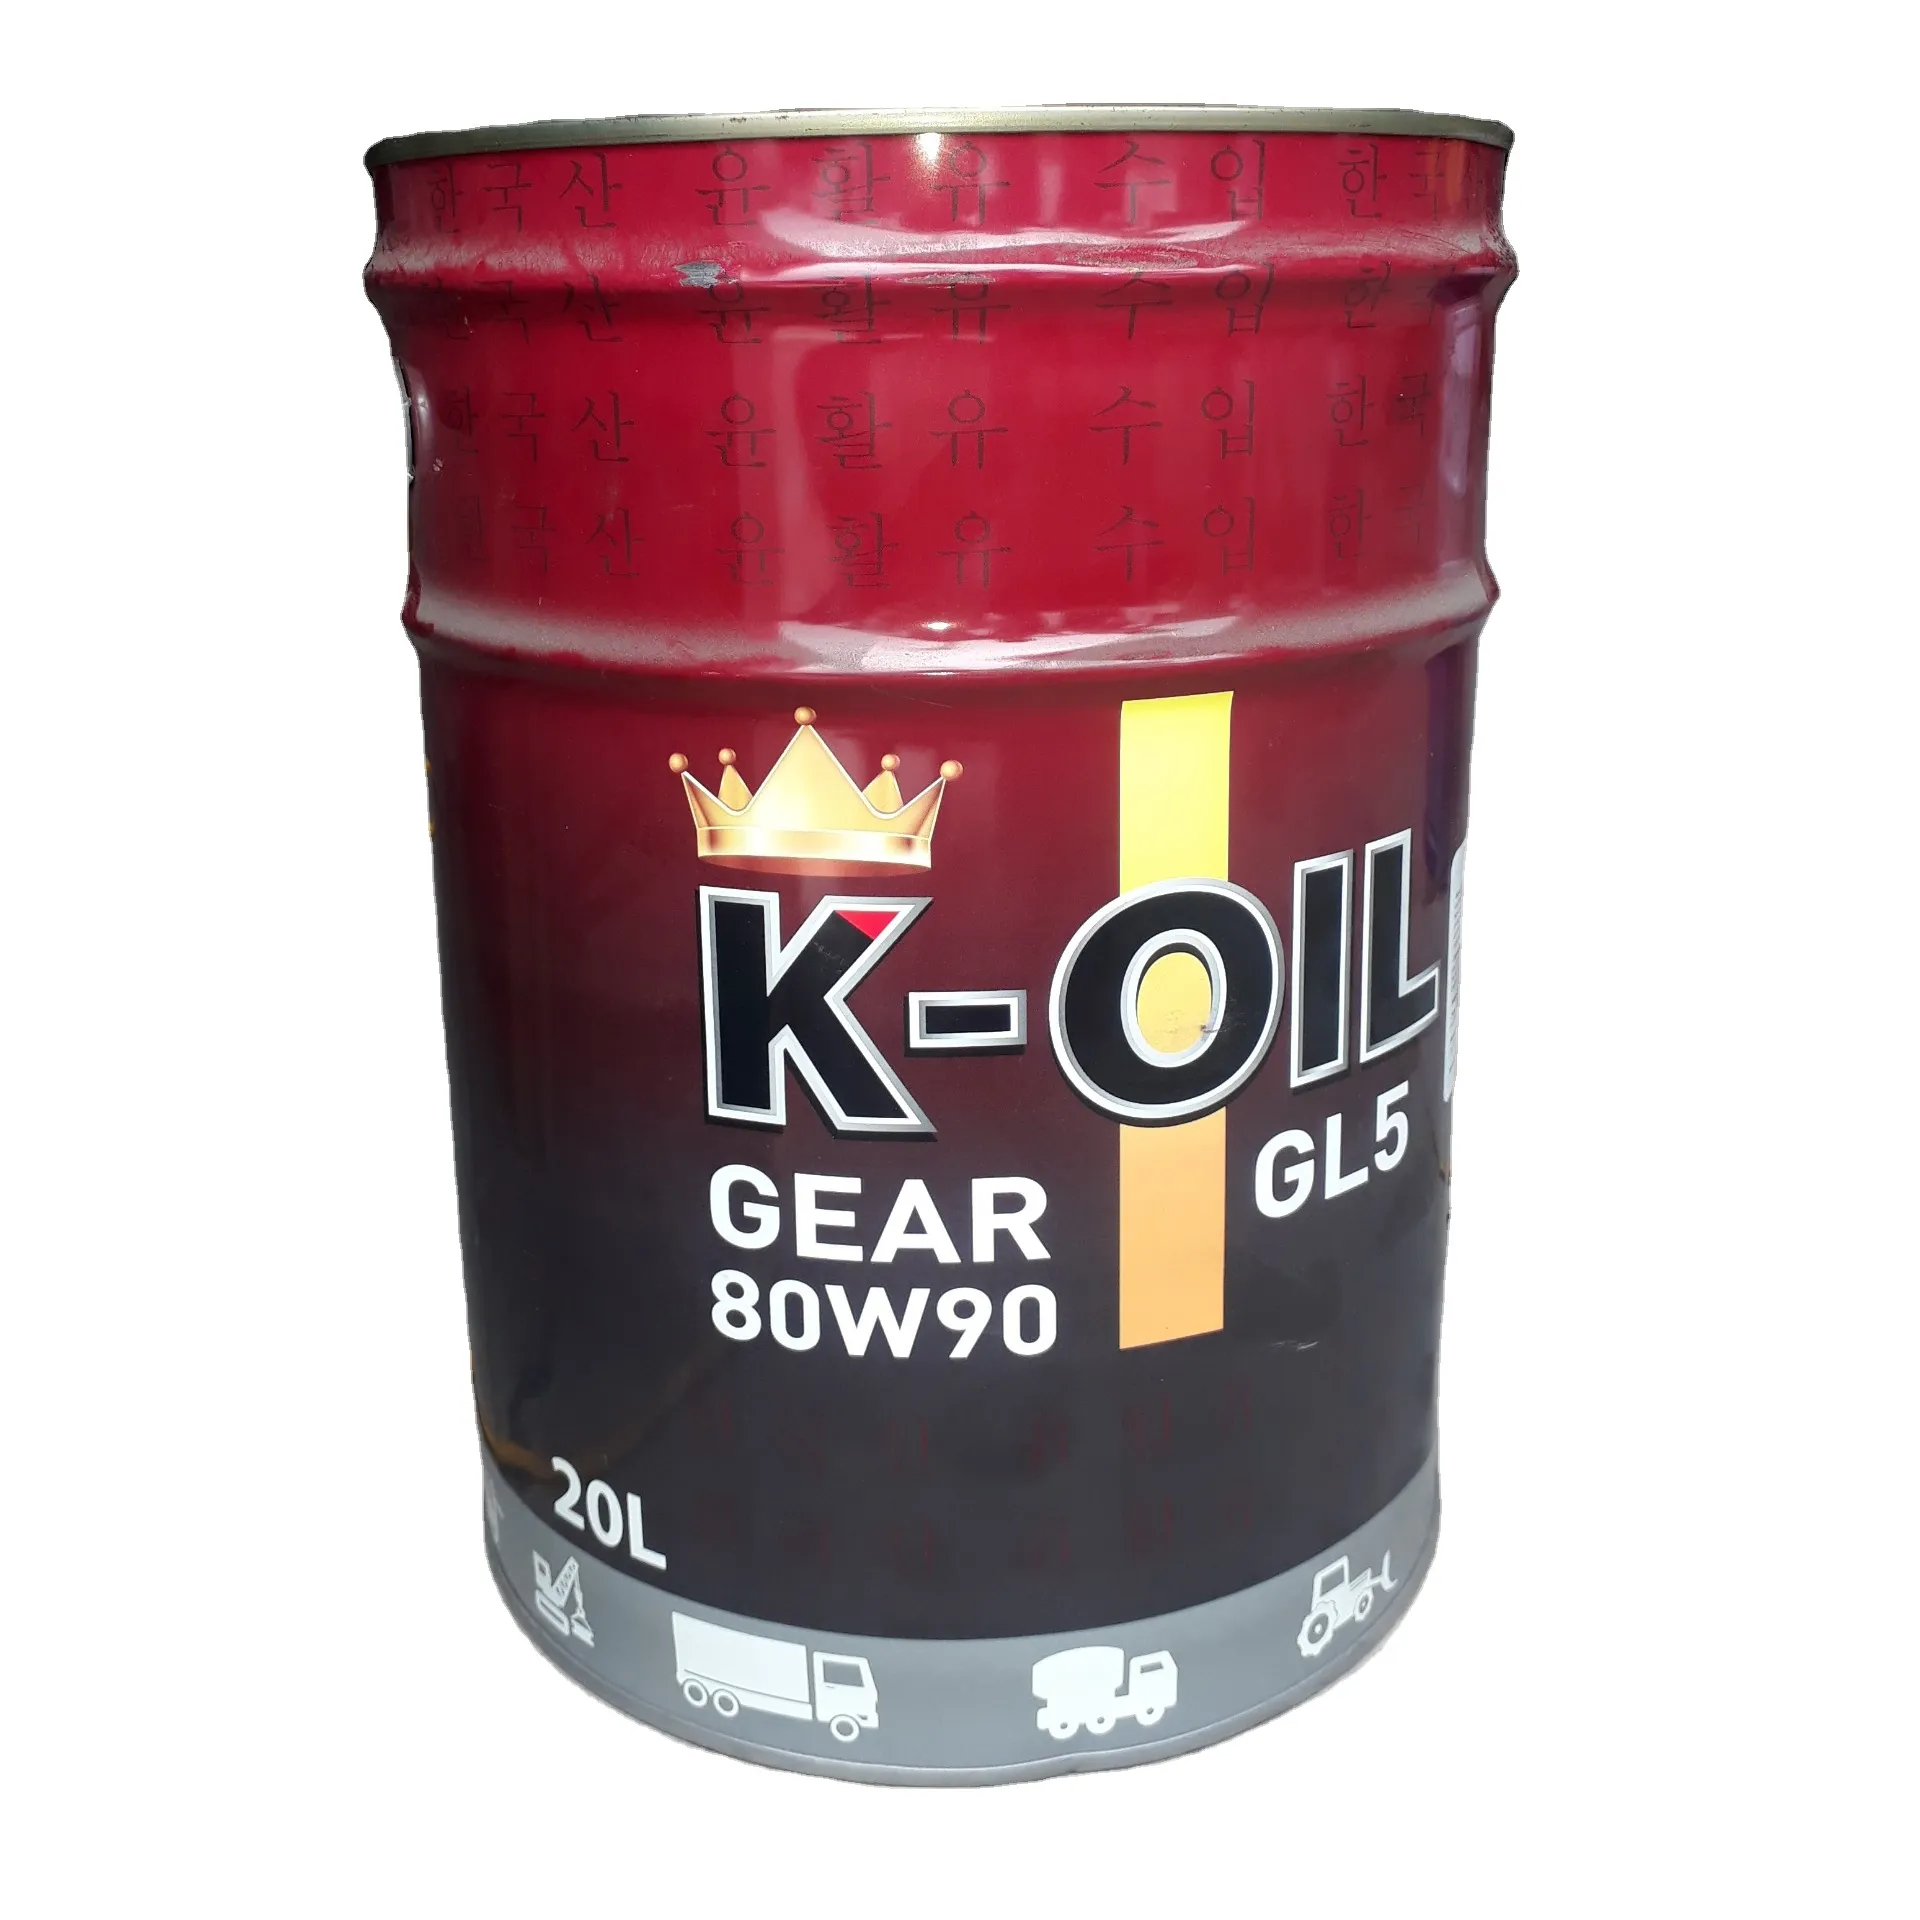 K yağ yüksek kalite ve uygun fiyat şanzıman yağ dişli GL5 yüksek anti-oksidasyon çok amaçlı yağ çin'de yapılan kore